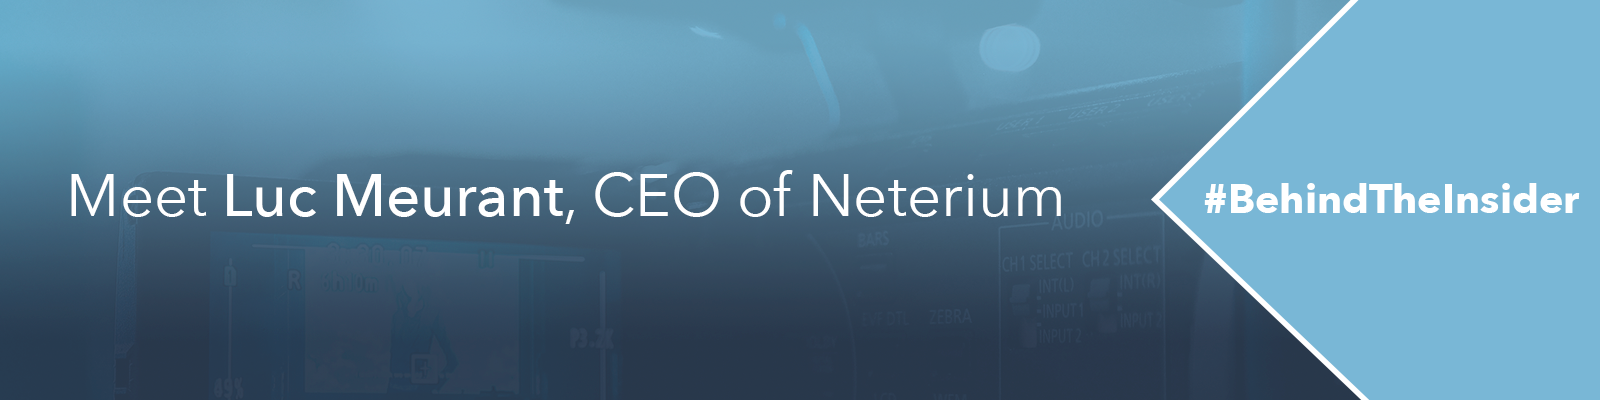 #BehindTheInsider - Meet Luc Meurant, CEO of Neterium